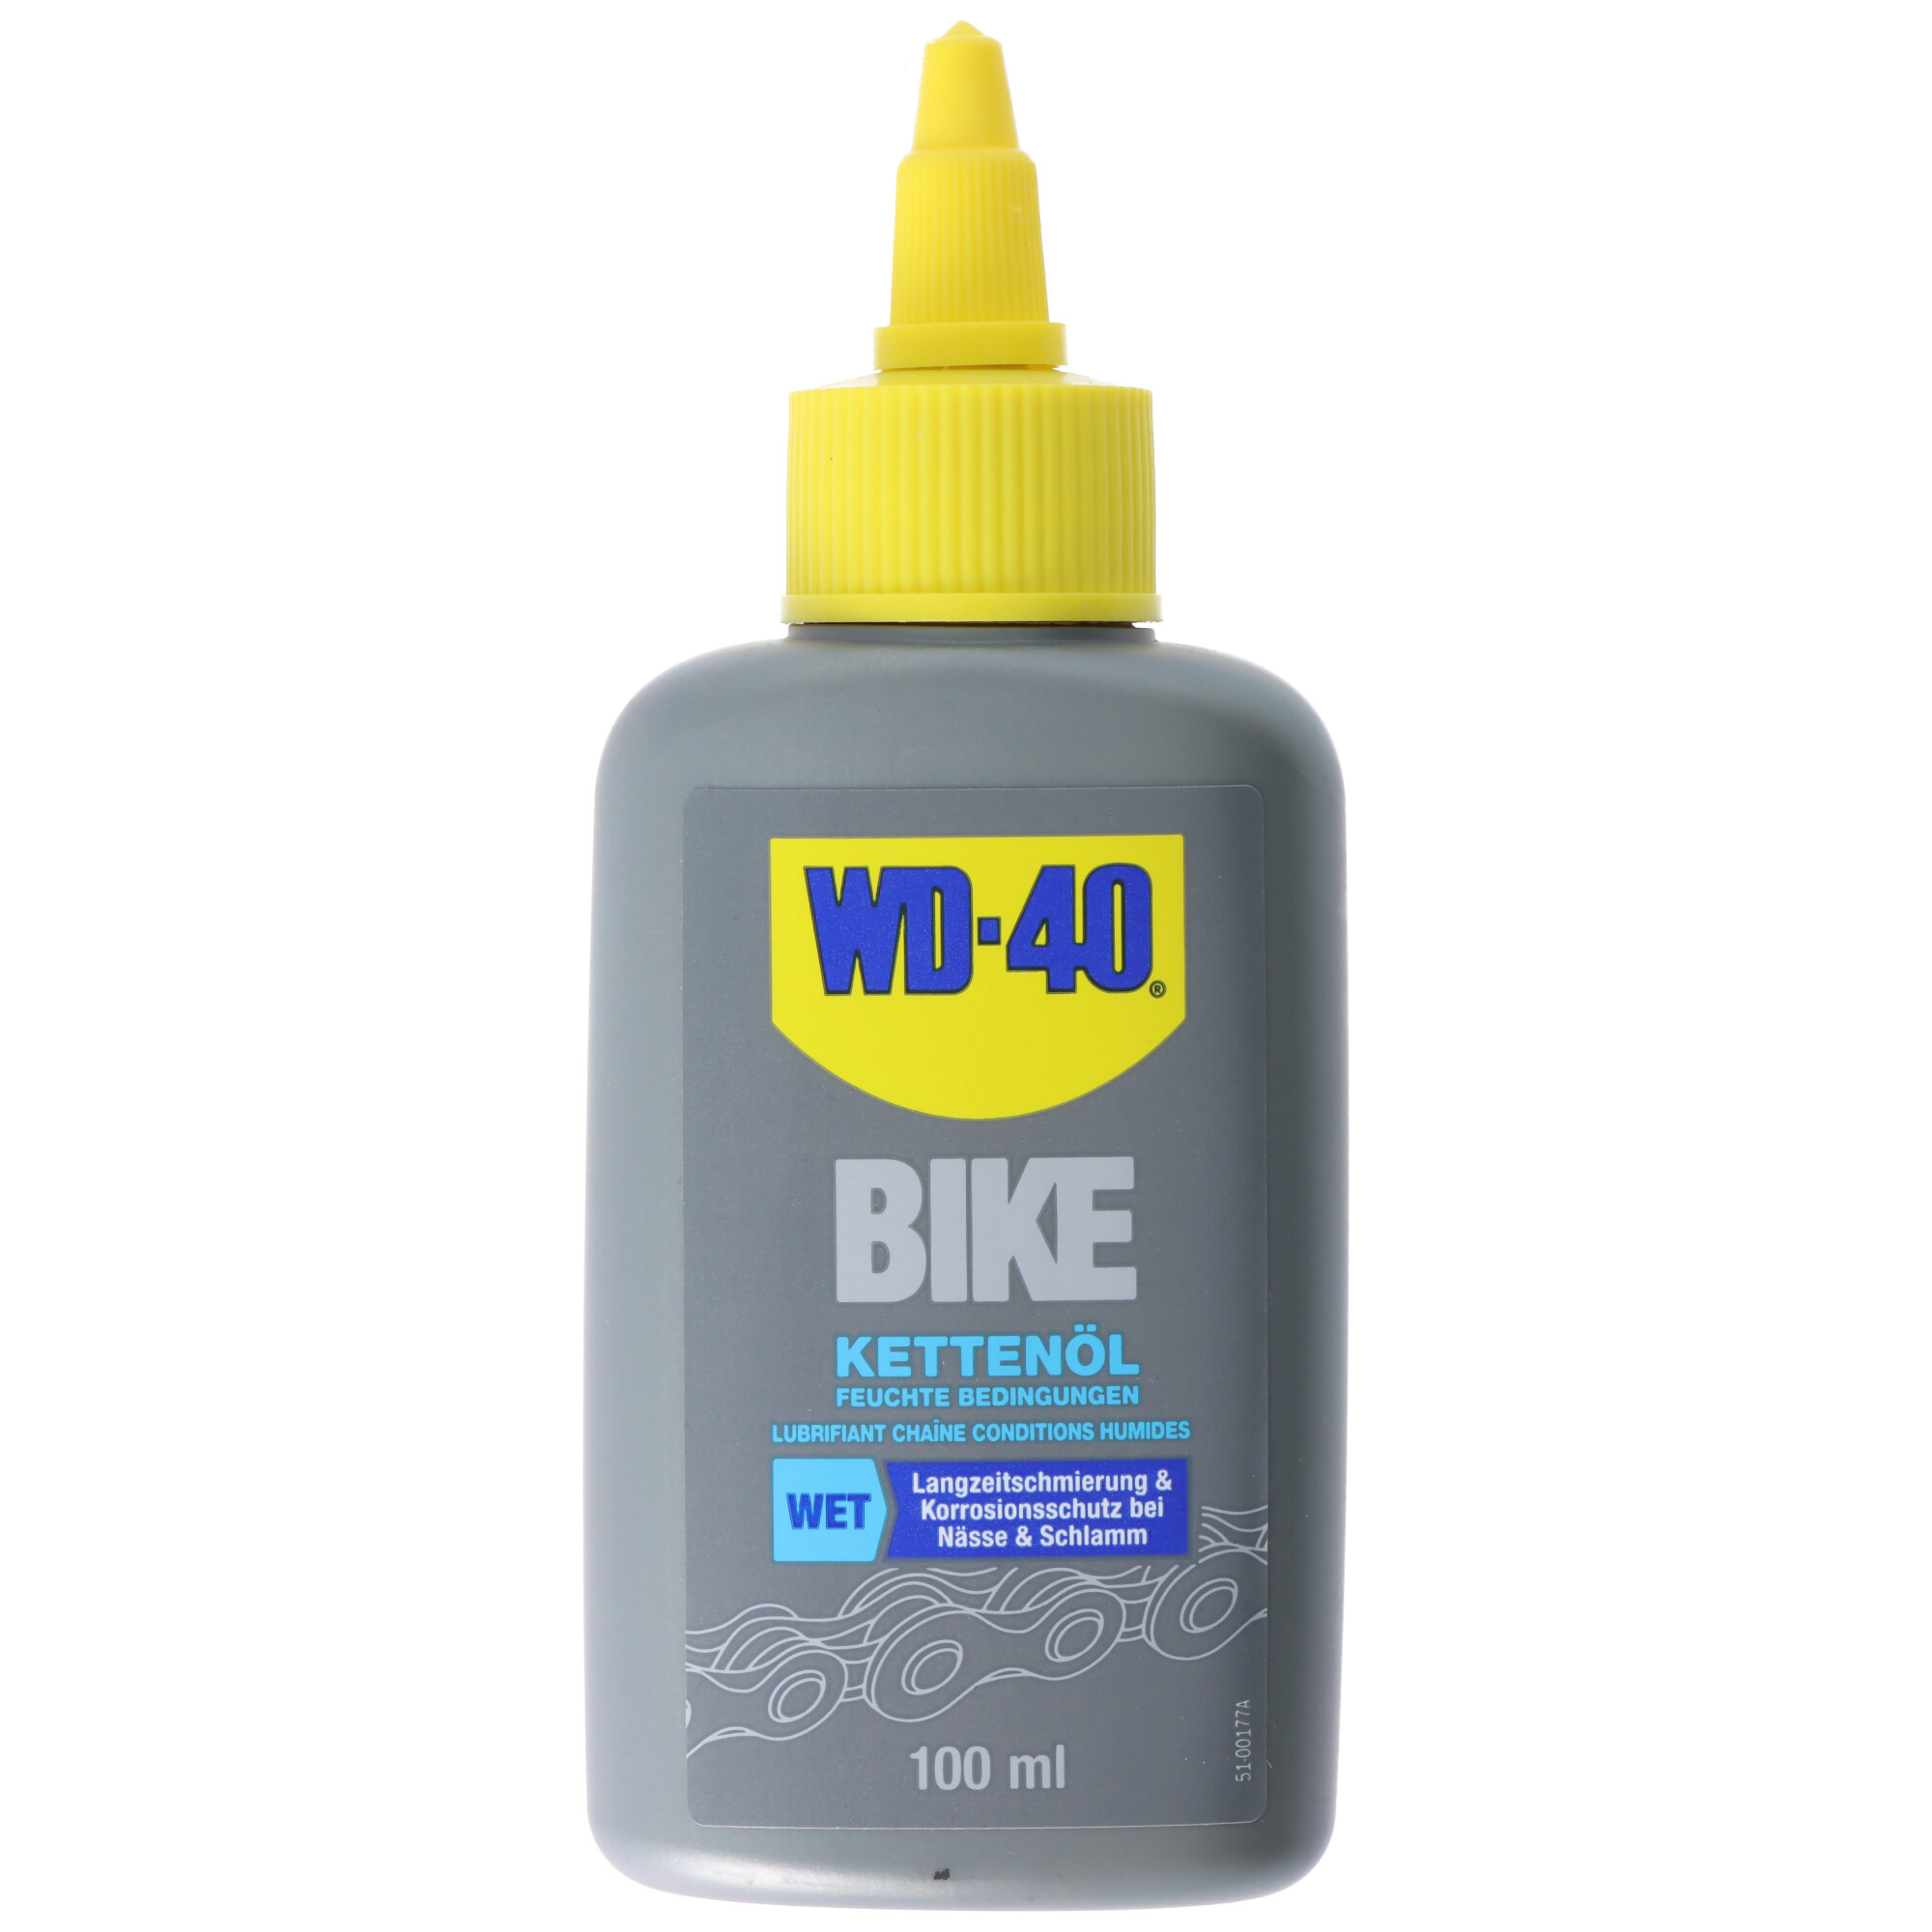 WD-40 BIKE Kettenöl, Fahrradketten Öl für feuchte Bedinungen, WD-40 WET, Korrosionsschutz bei Nässe und Schlamm